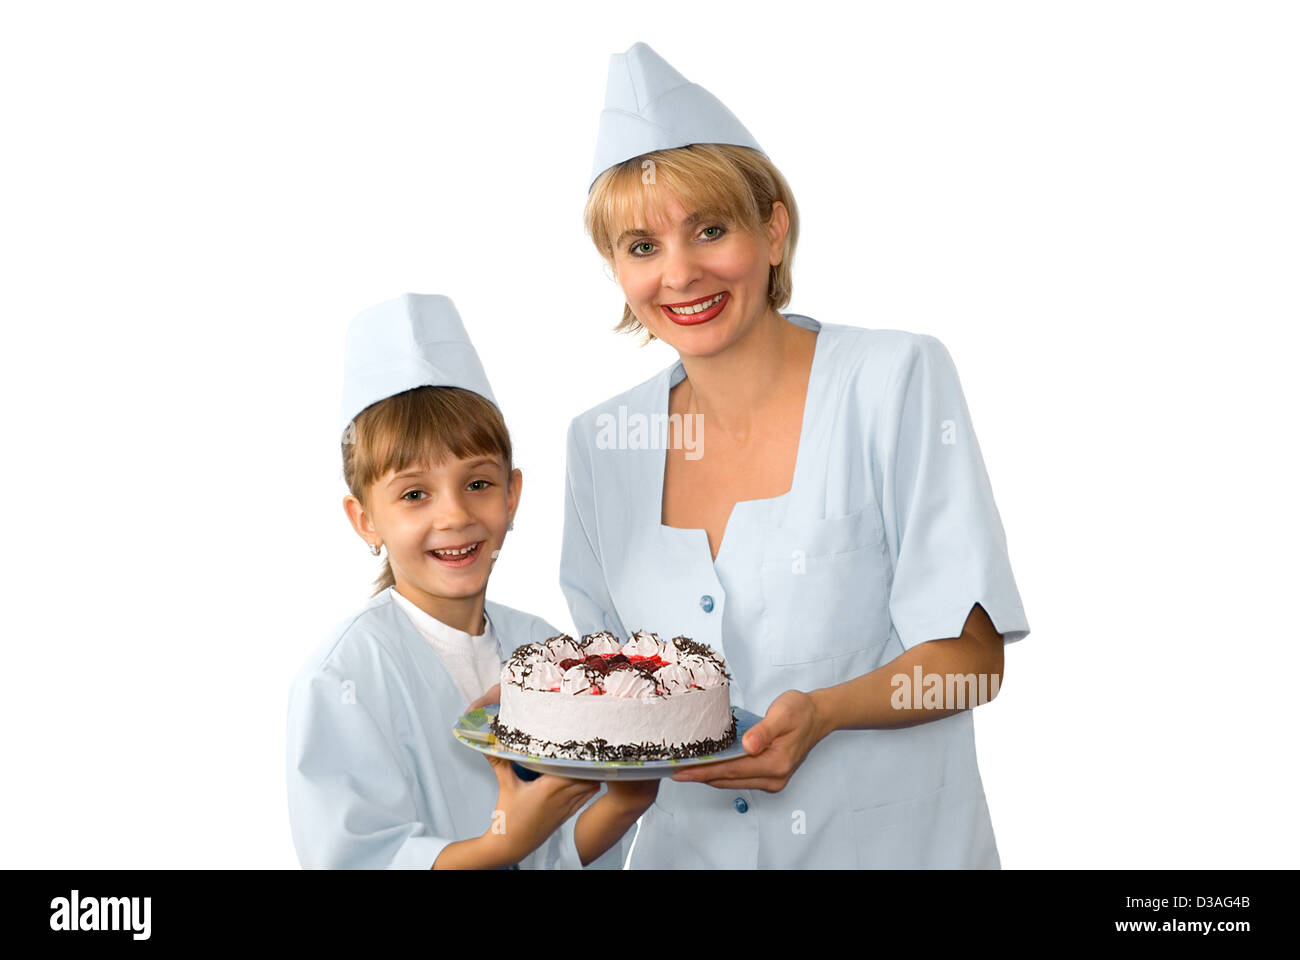 Der Konditor und Ihr kleine Helfer werden mit einem Kuchen fotografiert Stockfoto